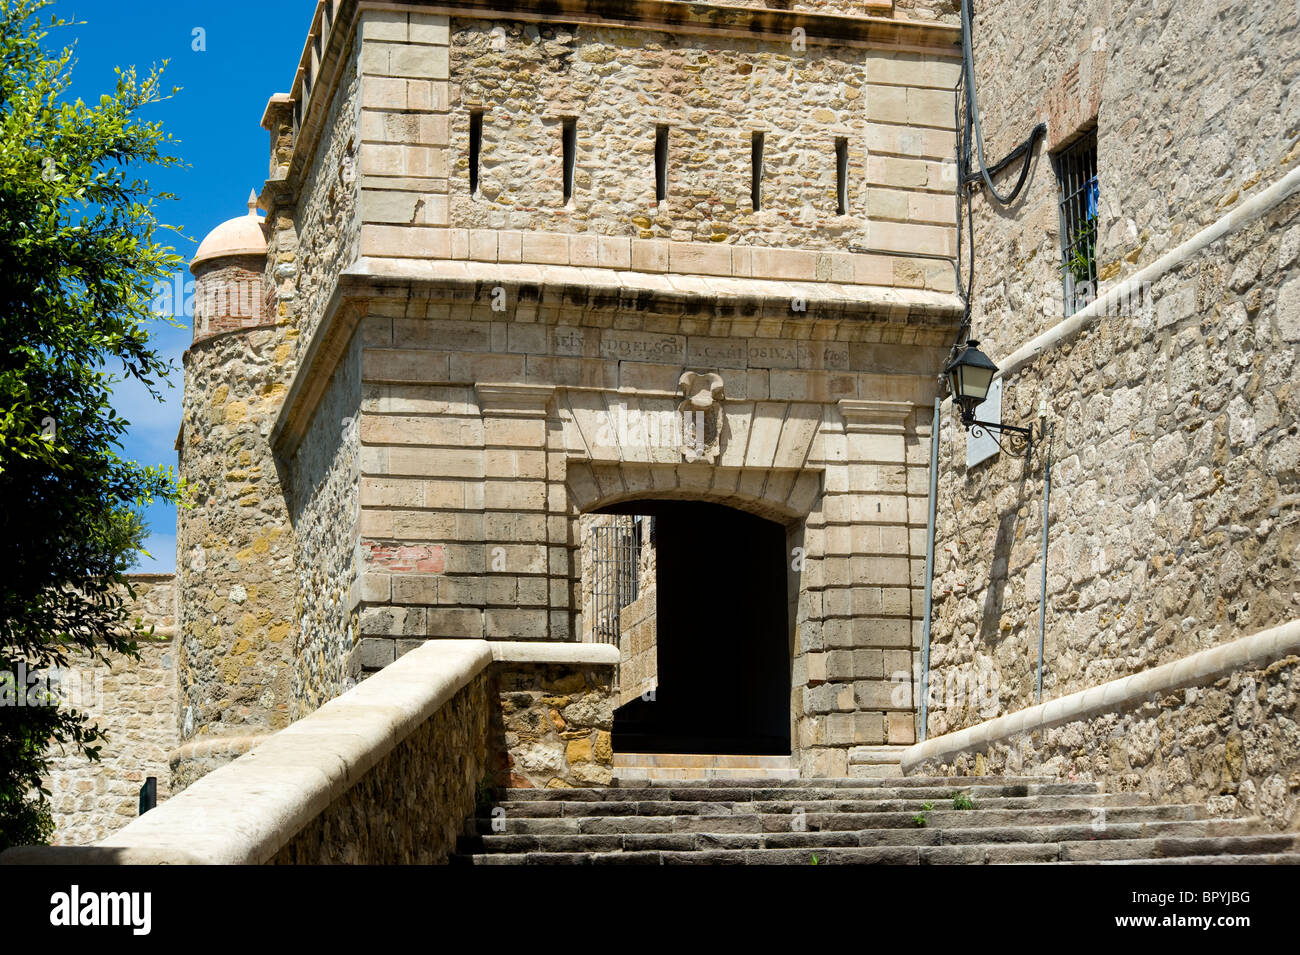 Puerta de la marina, l'accès à Melilla La Vieja citadelle. Melilla.Espagne. Banque D'Images